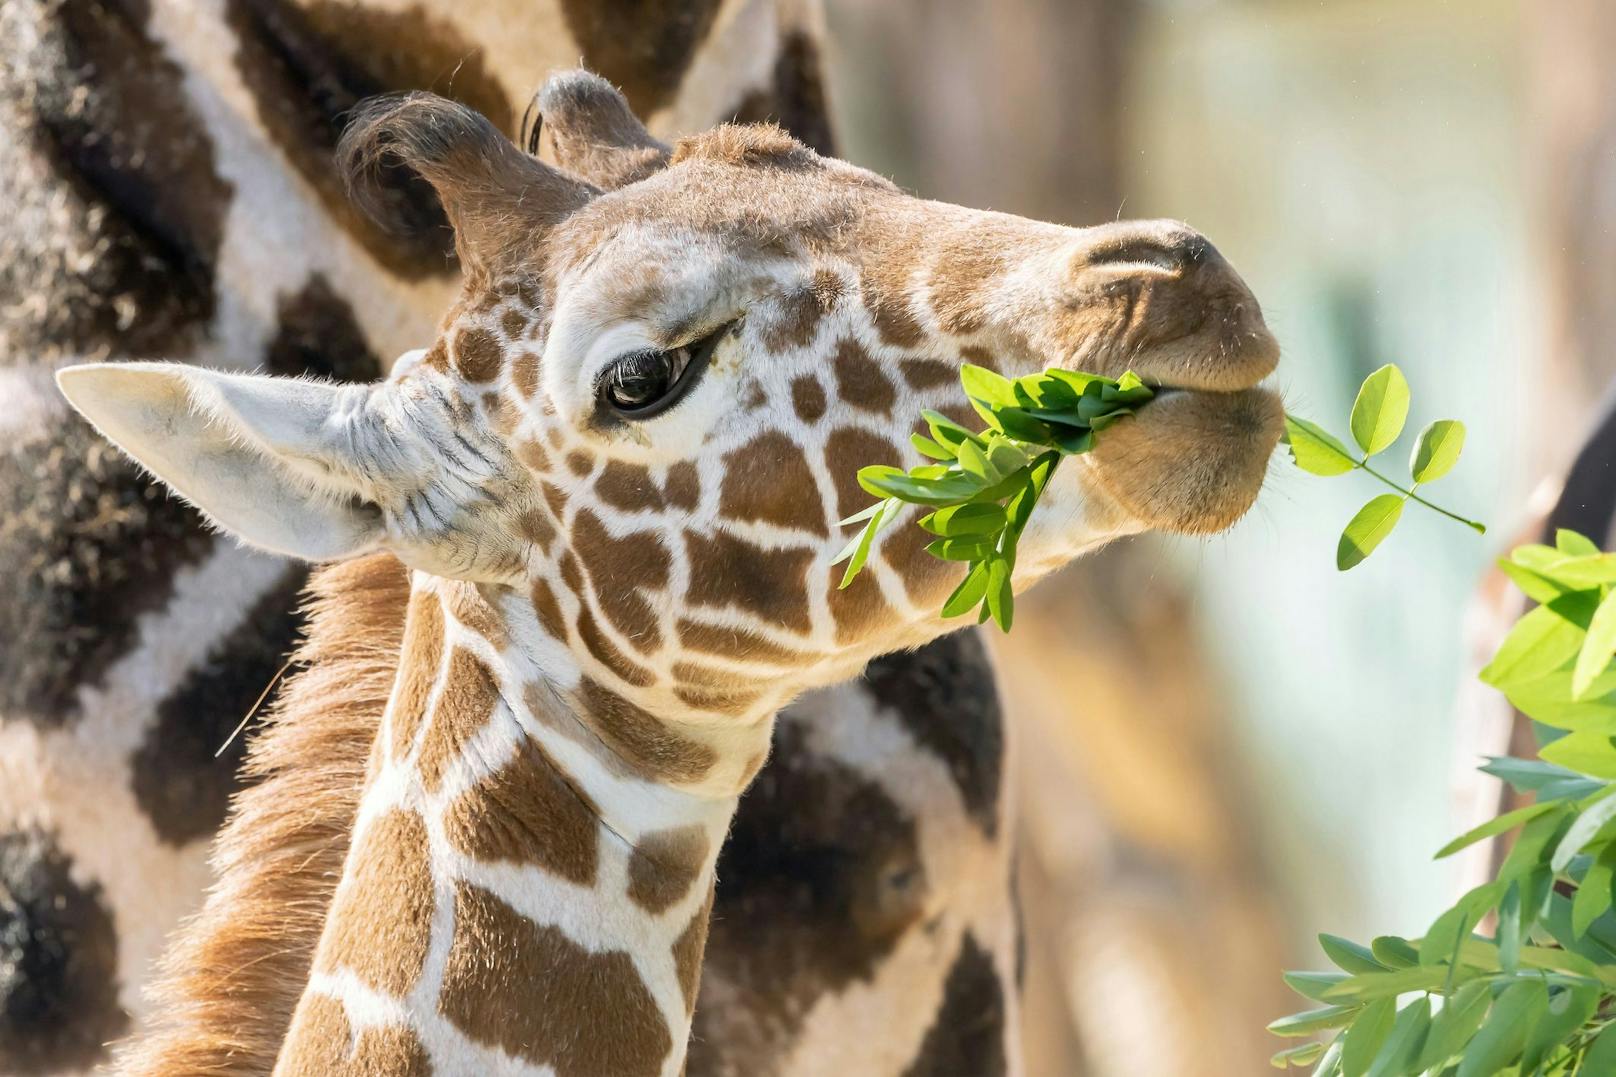 Einen großen Teil der Äste und Blätter, die unsere Giraffen fressen, bekommt Schönbrunn traditionell vom Forst- und Landwirtschaftsbetrieb der Stadt Wien zur Verfügung gestellt.